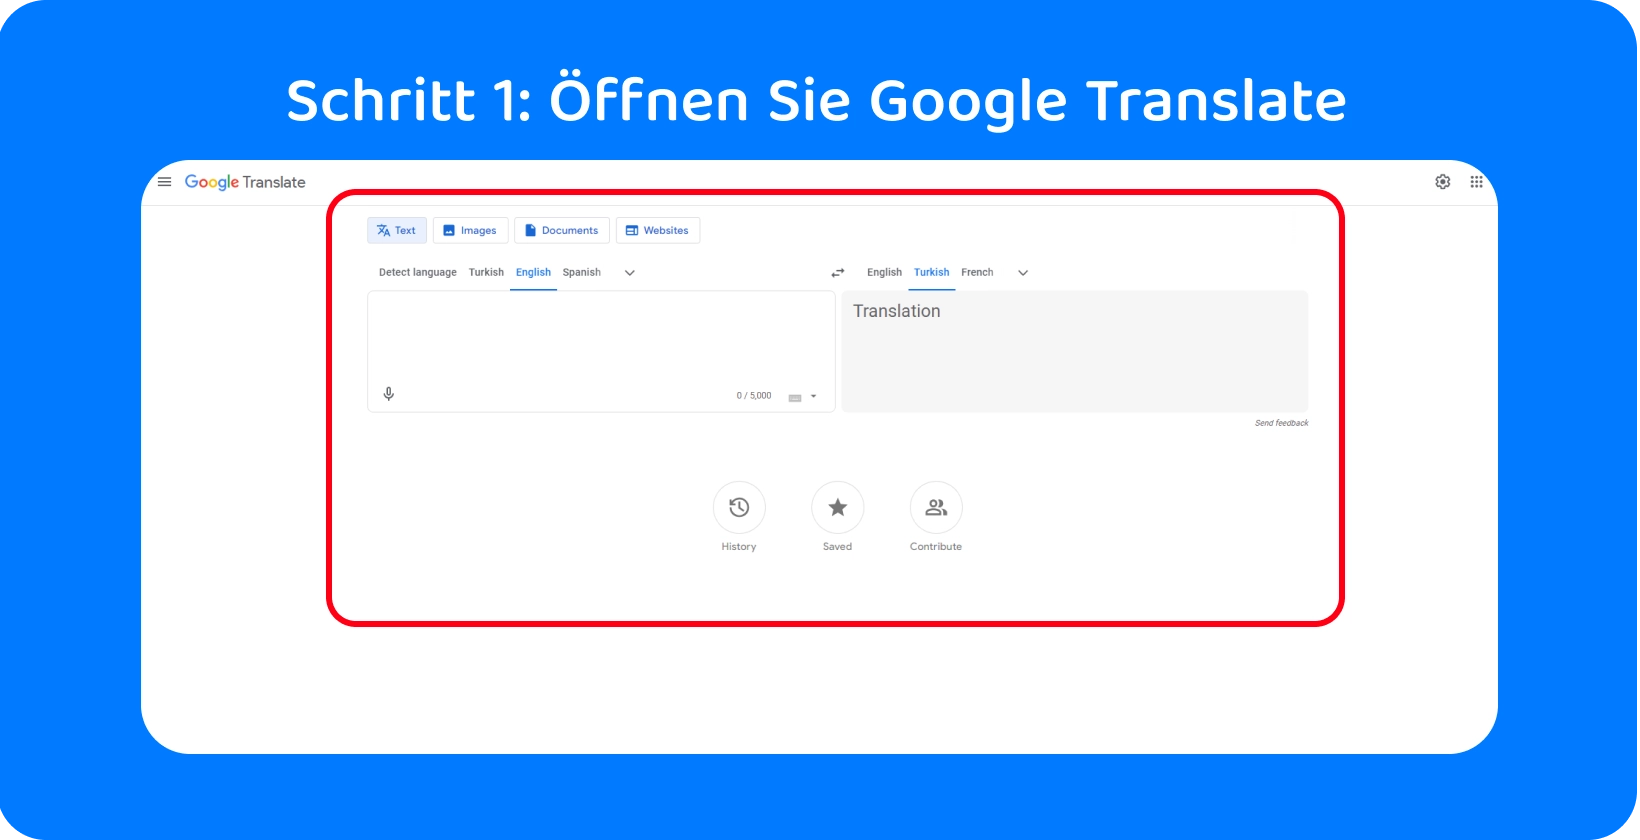 Die Google Translate-Schnittstelle ist bereit, gesprochene Wörter in Text umzuwandeln und Schritt 1 im Prozess zu veranschaulichen.